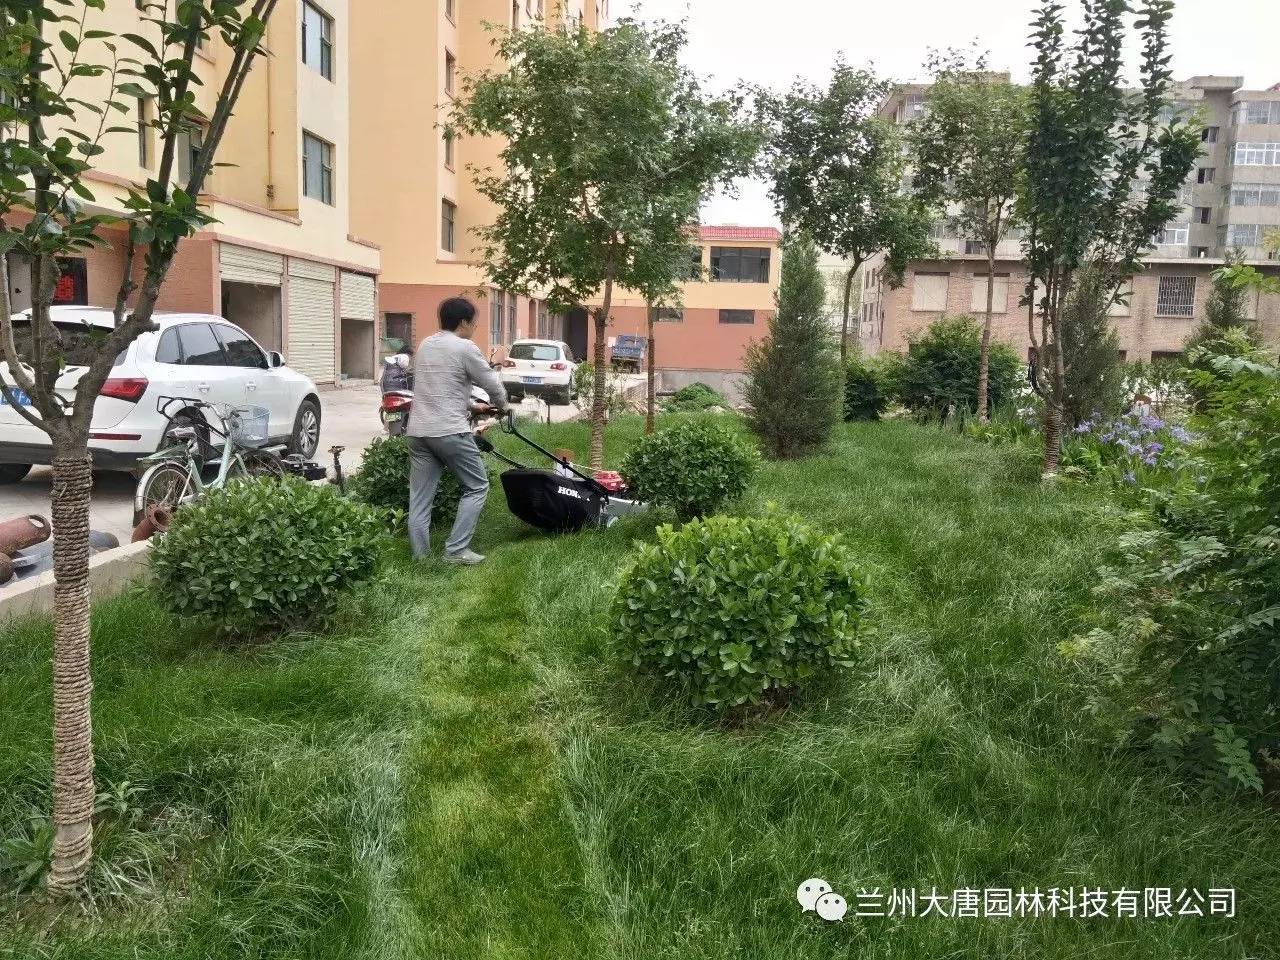 【施工案例】临洮怡康苑住宅小区园林景观绿化工程